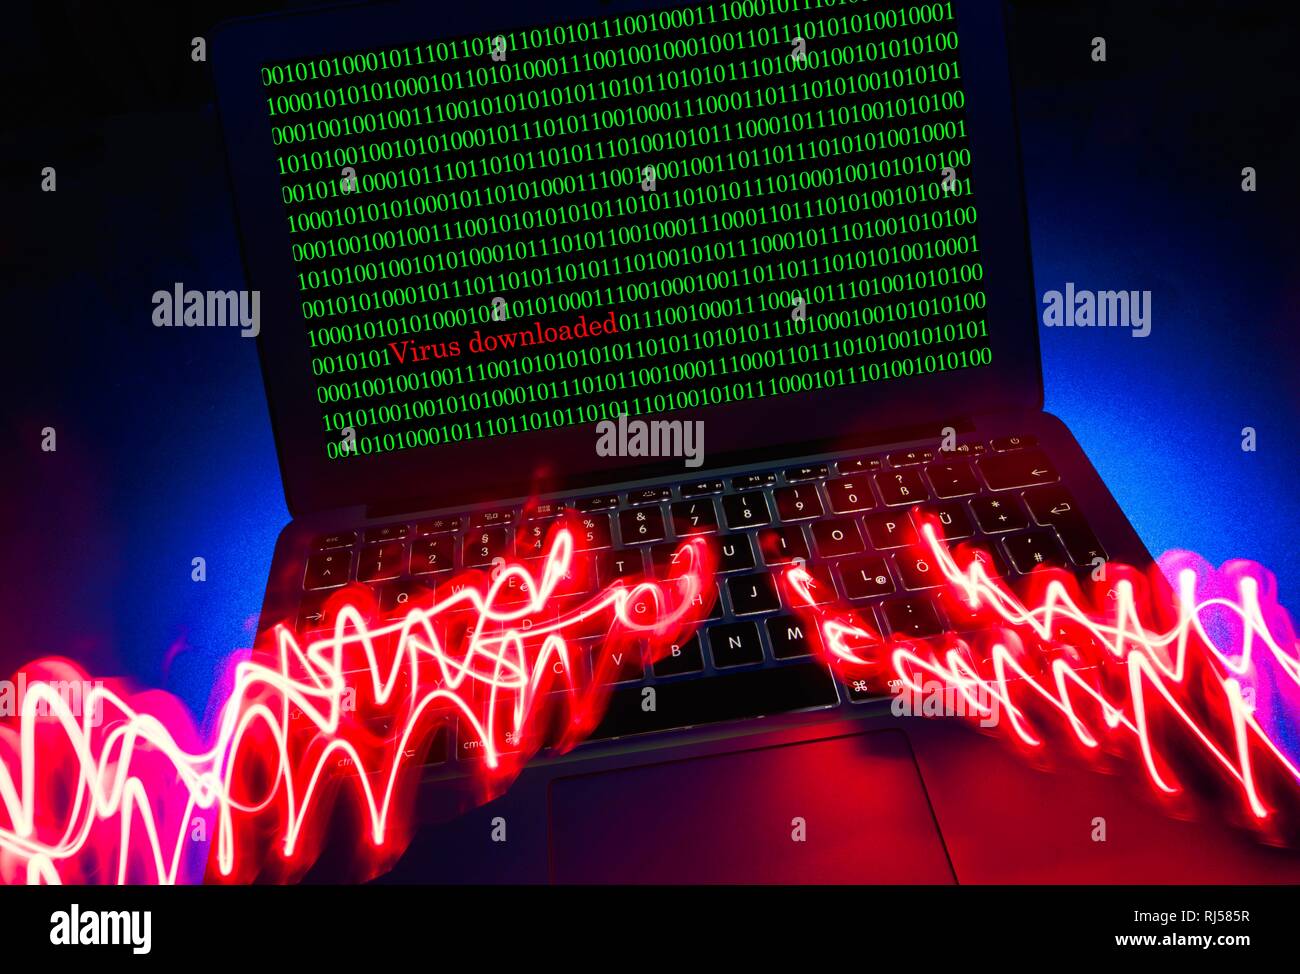 Laptop mit totenkopf und gekreuzten Knochen auf dem Bildschirm, das Symbol Bild malware, Virus Alarm, Computerkriminalität, Datenschutz, Deutschland Stockfoto